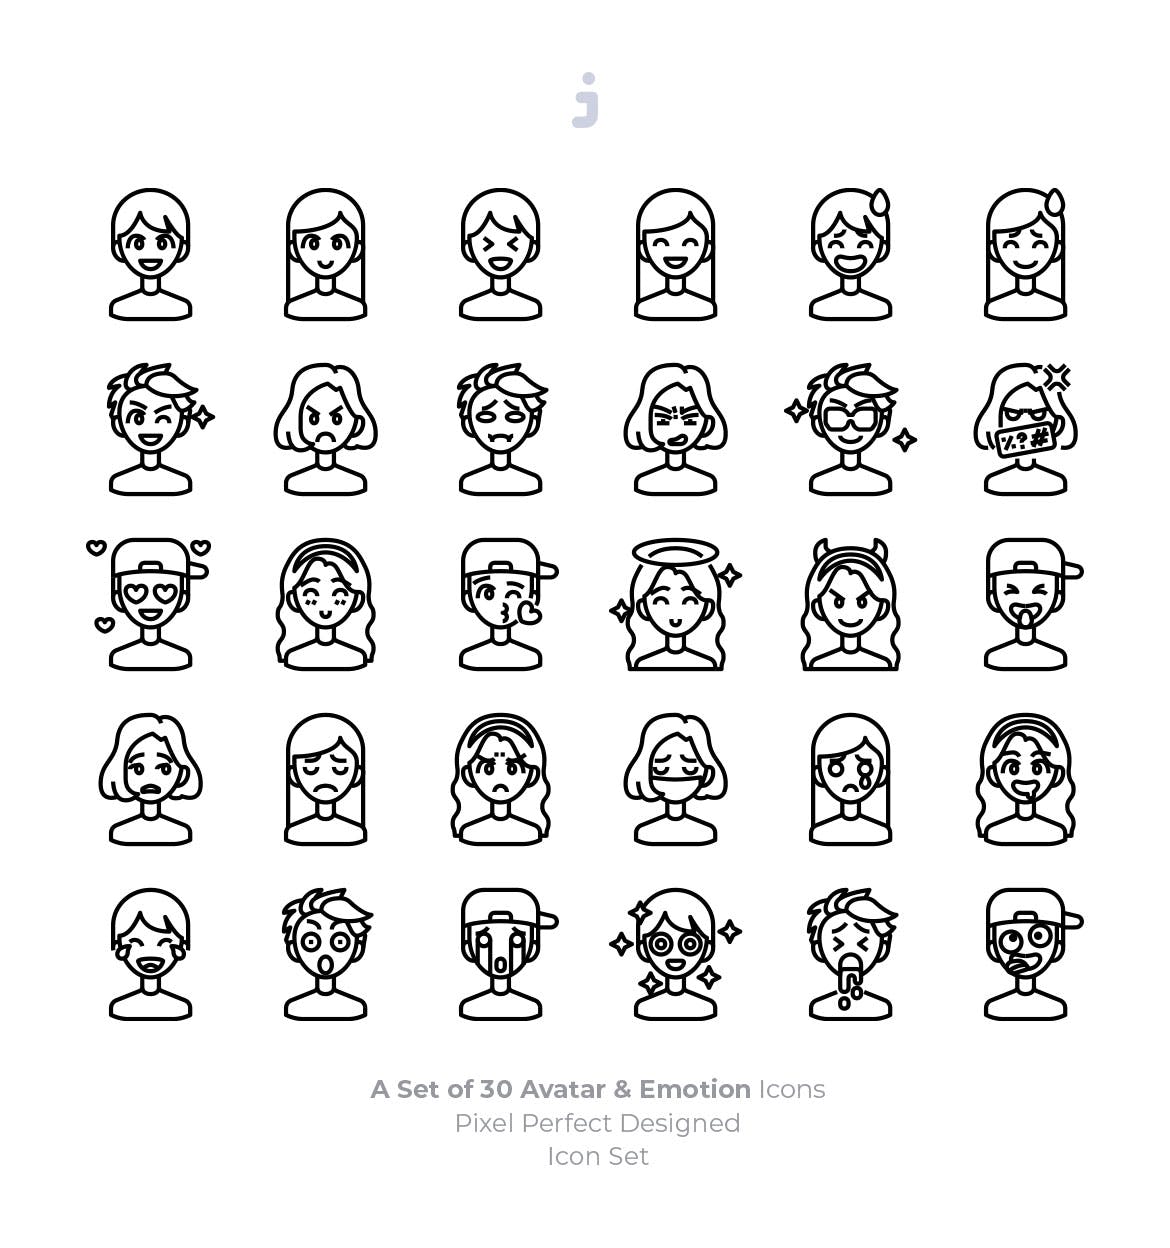 30枚彩色人物头像&表情矢量蚂蚁素材精选图标 30 Avatar and Emotion Icons插图(2)